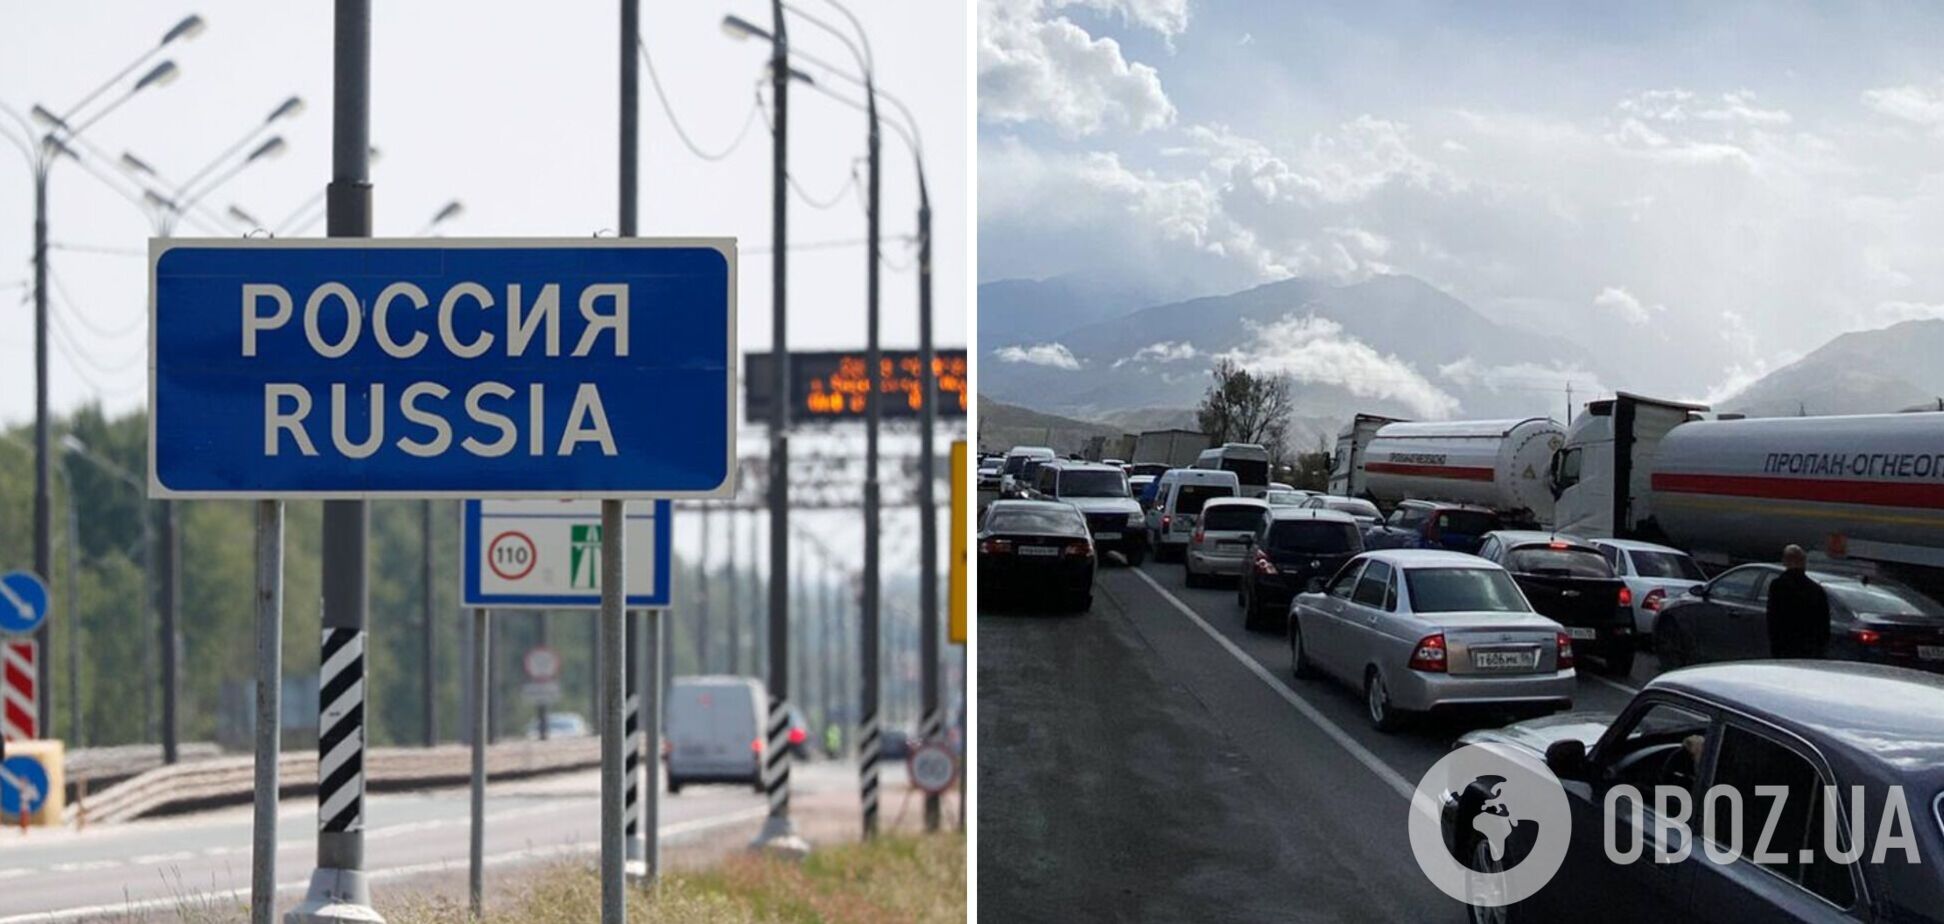 В России с 1 марта запретят пересечение границы РФ на авто без предварительного резервирования даты и времени